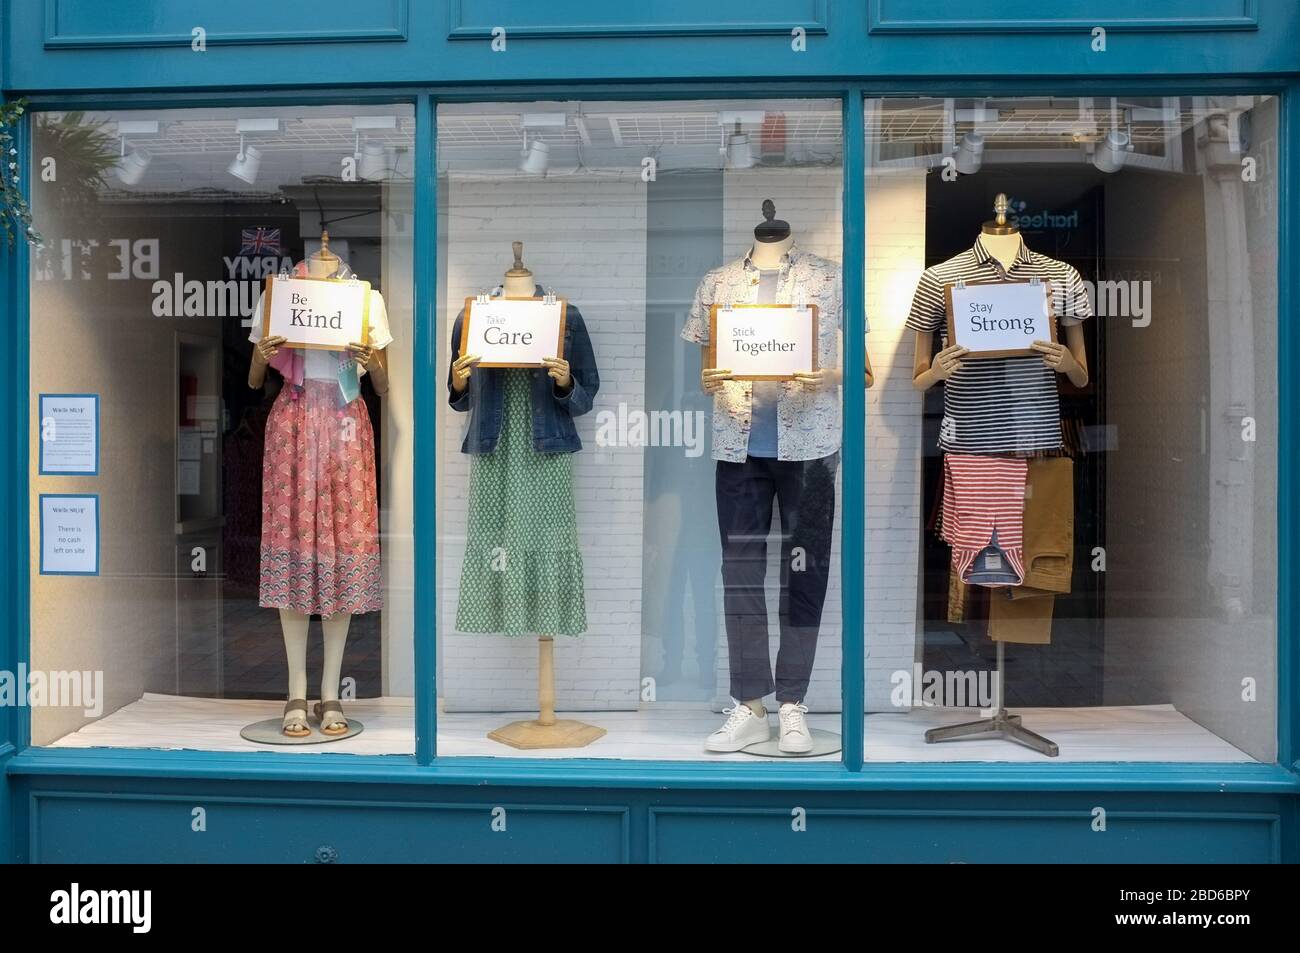 Des signes optimistes sont affichés dans une vitrine de magasins White Stuff pendant l'éclosion de Covid 19. Salisbury, Wiltshire. Royaume-Uni avril 2020 Banque D'Images